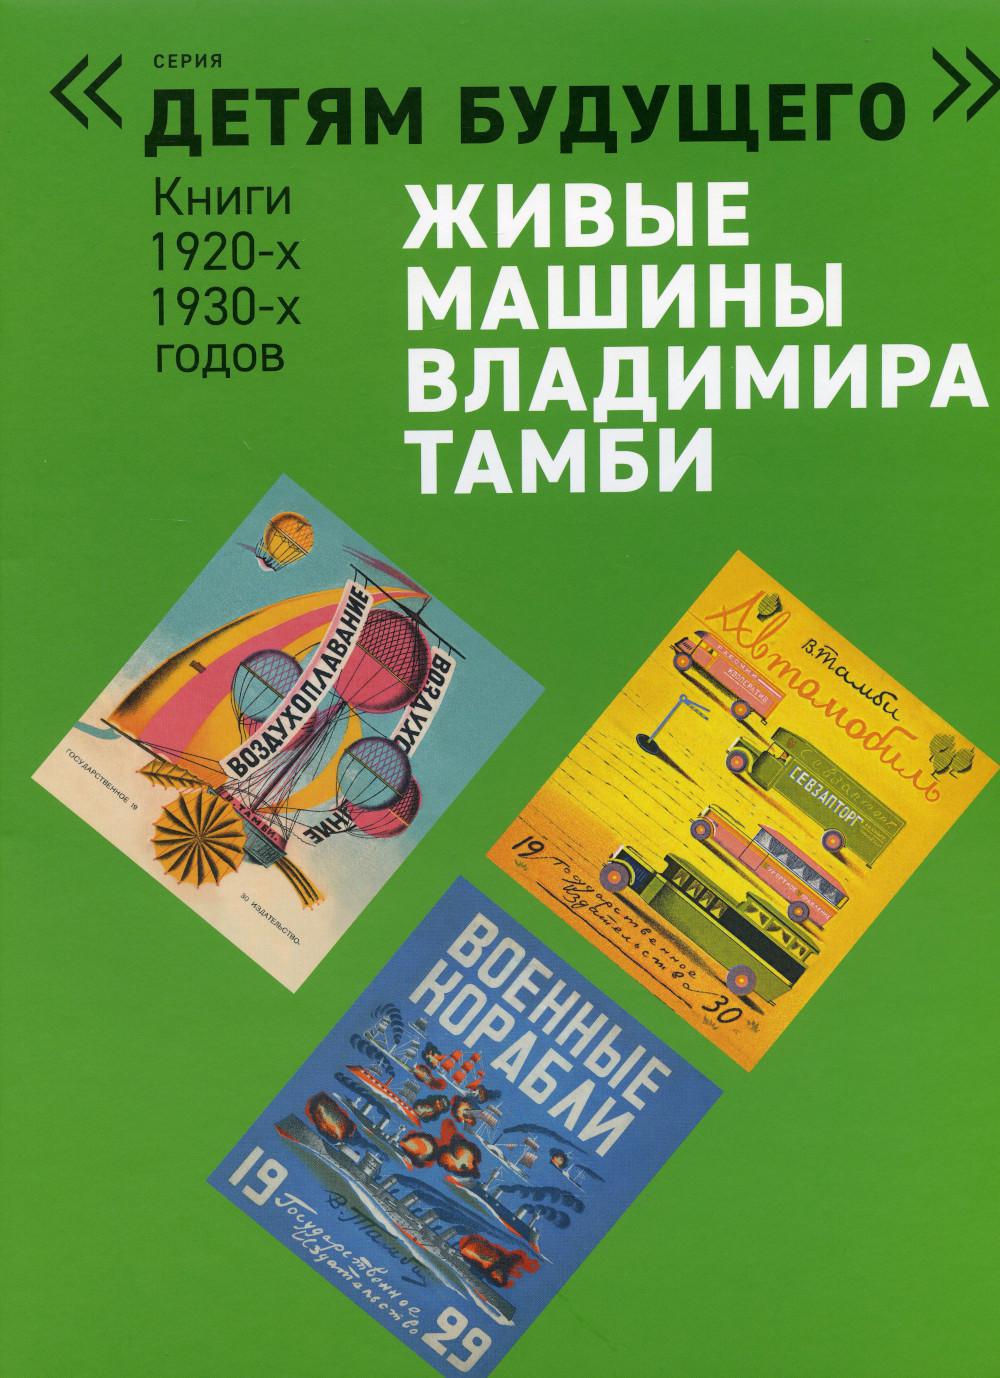 Живые машины Владимира Тамби–1. 2-е изд (комплект из 6 книг)